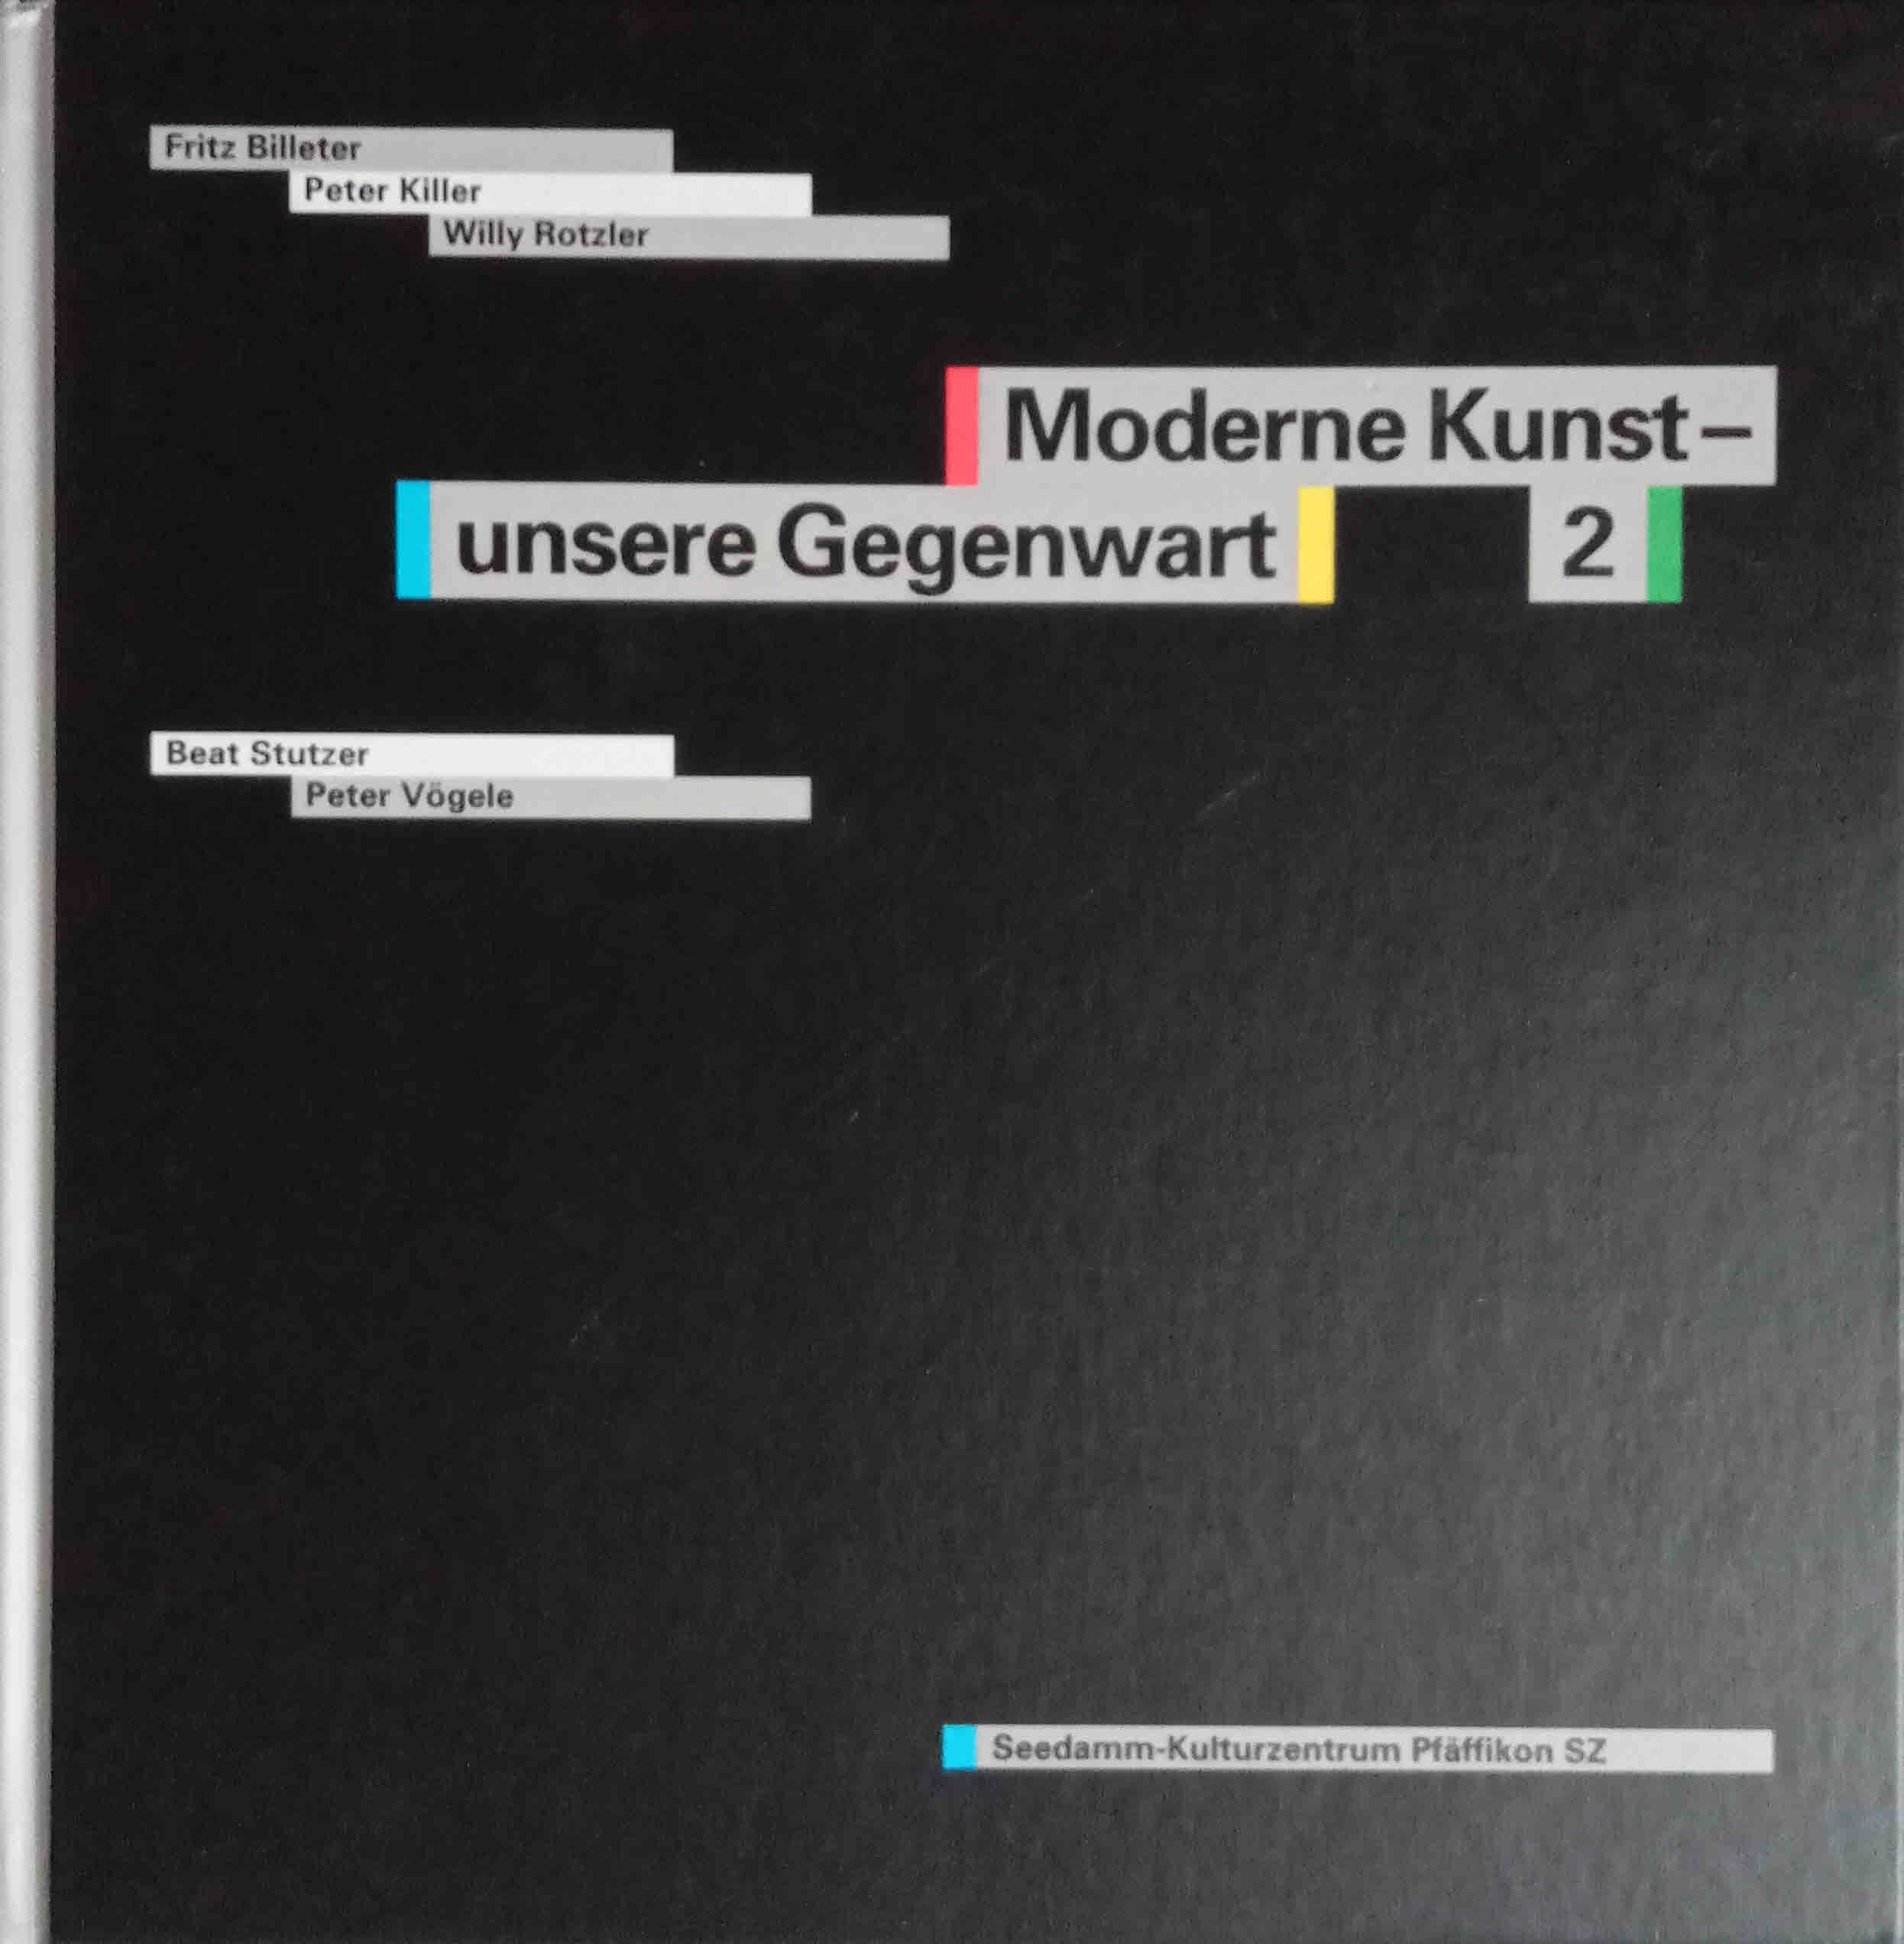 Moderne Kunst - unsere Gegenwart; Teil: 2., Sammlungsergänzungen 1986 - 1992 Sammlung Charles Vögele. - Billeter, Fritz, Peter Killer und Willy Rotzler